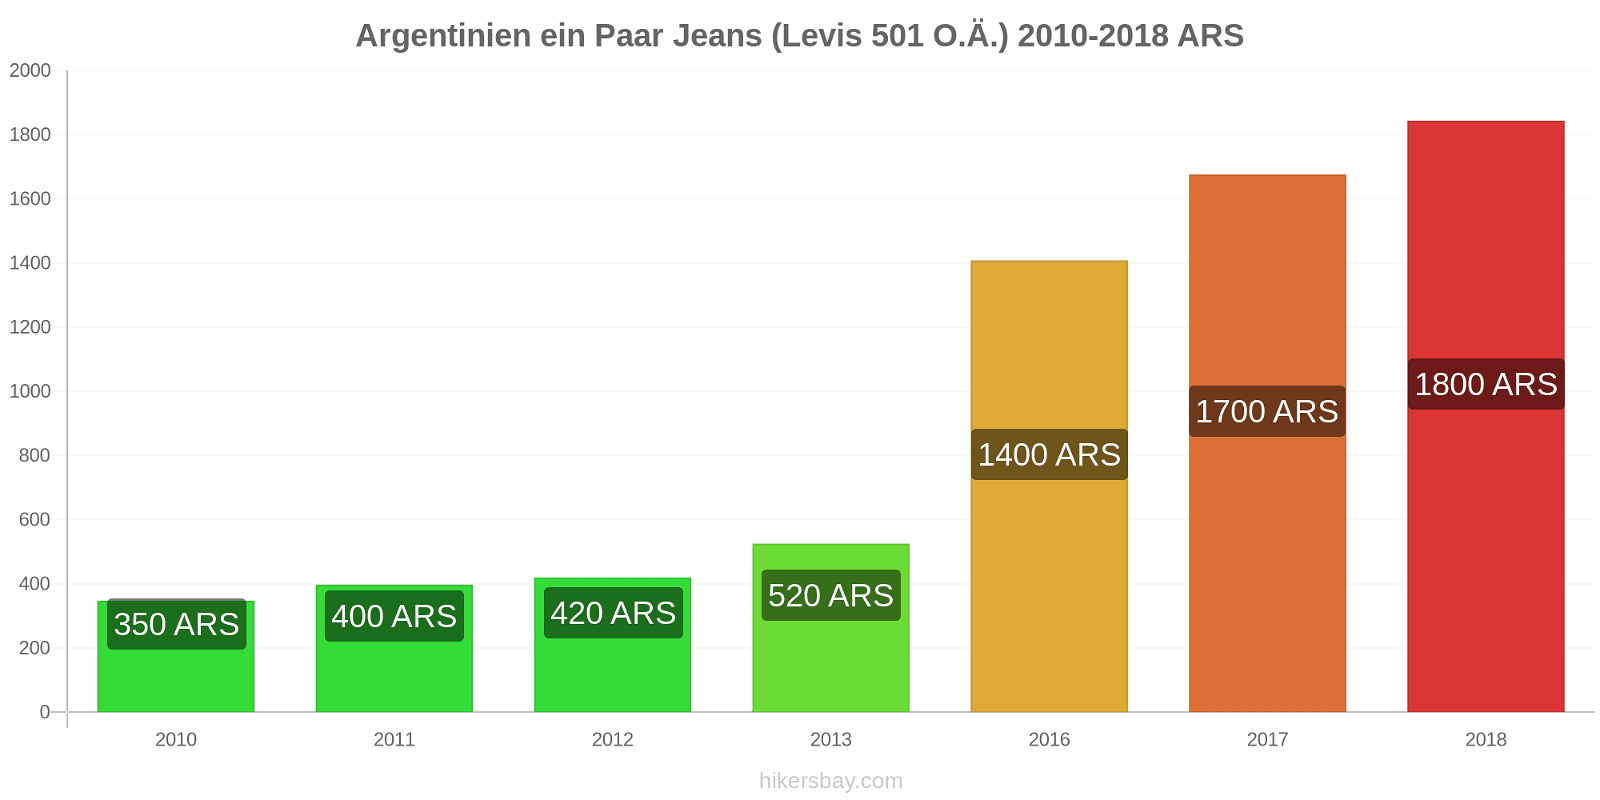 Argentinien Preisänderungen 1 Paar Jeans (Levis 501 oder ähnlich) hikersbay.com